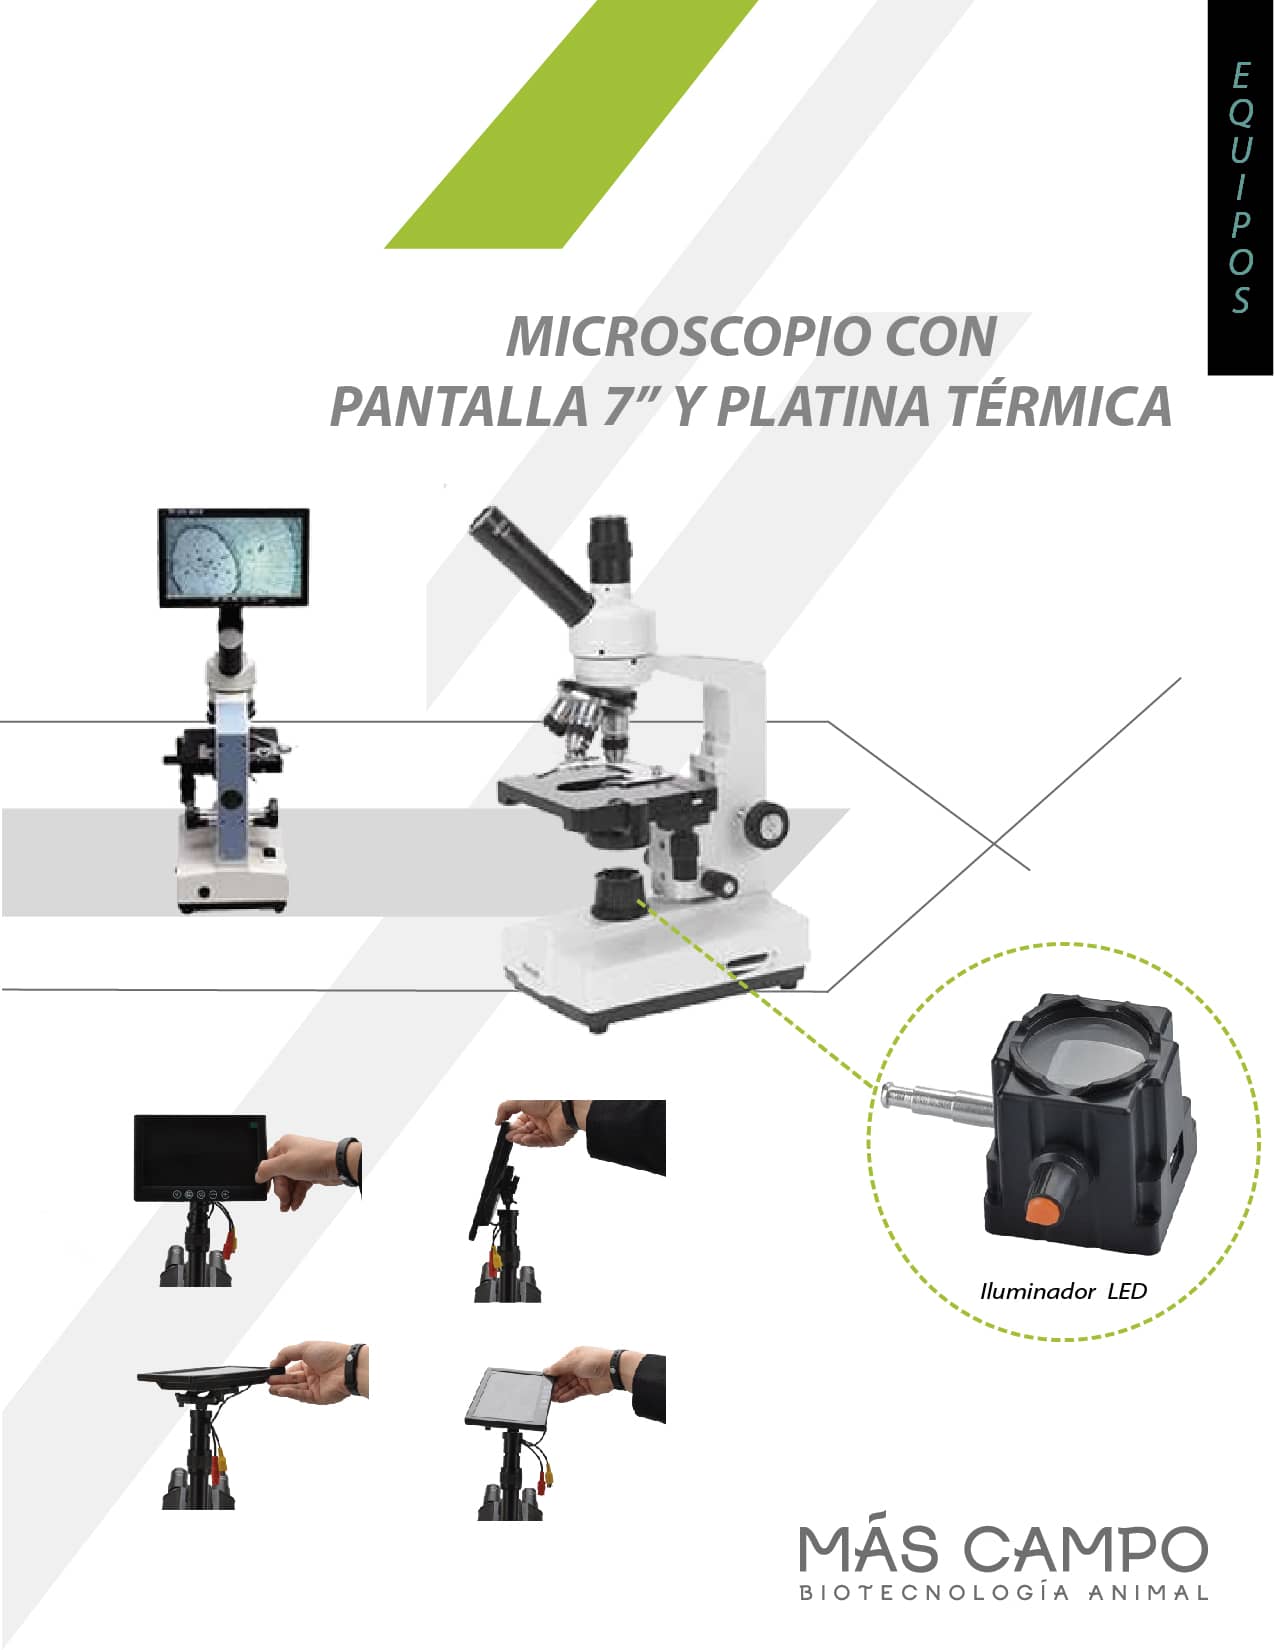 Microscopio con pantalla de 7 pulgadas - platina térmica